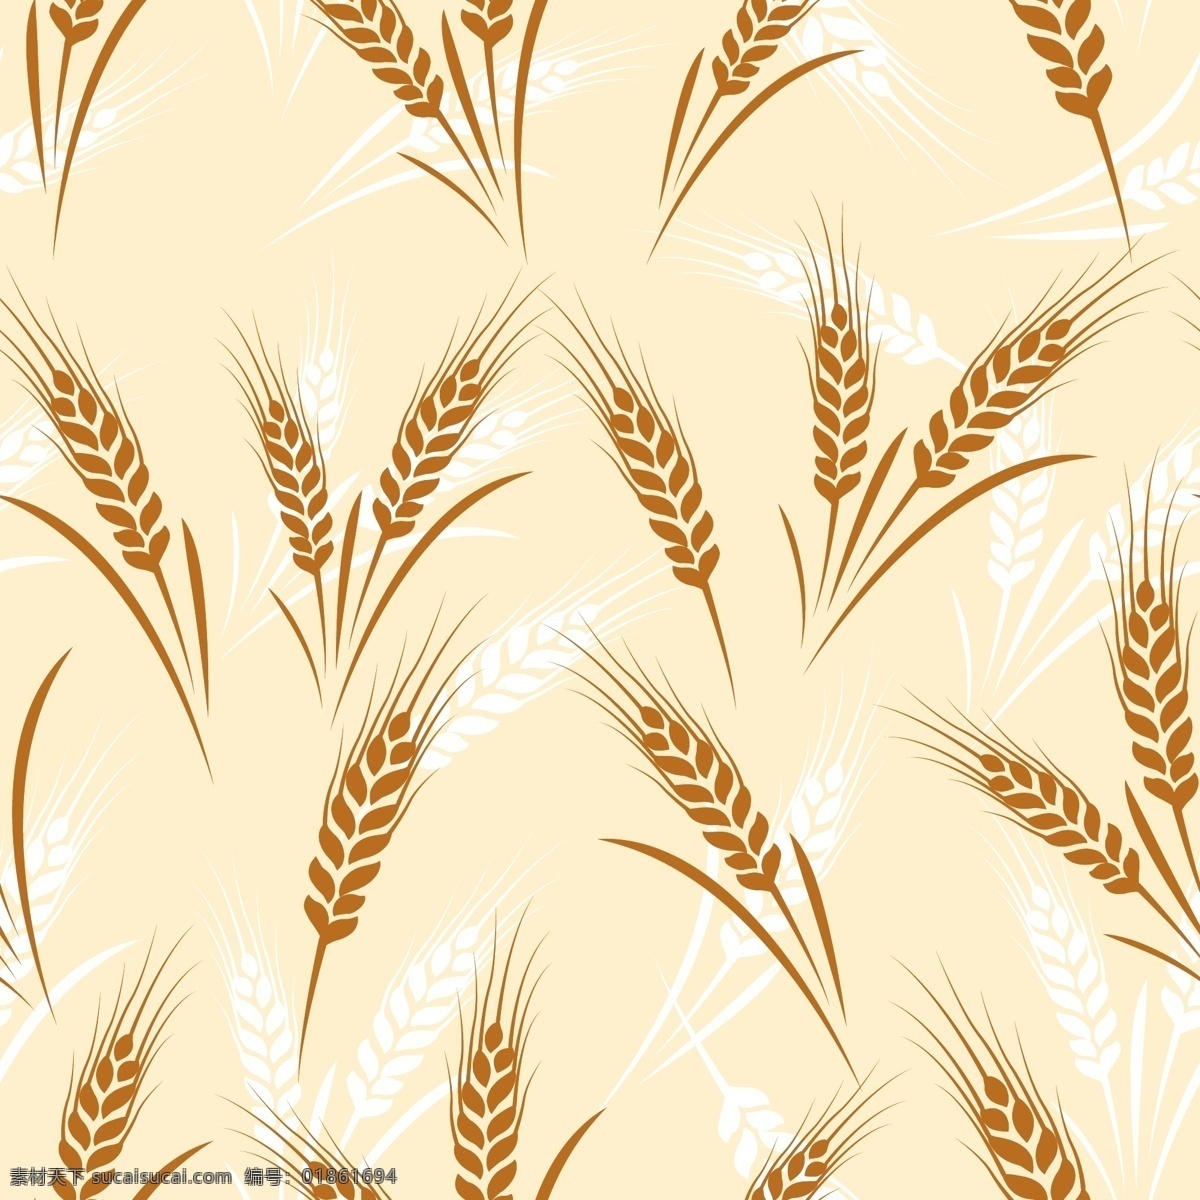 小麦 麦穗 麦子 粮食 农作物 食物 麦田 谷物 餐饮美食 生活百科